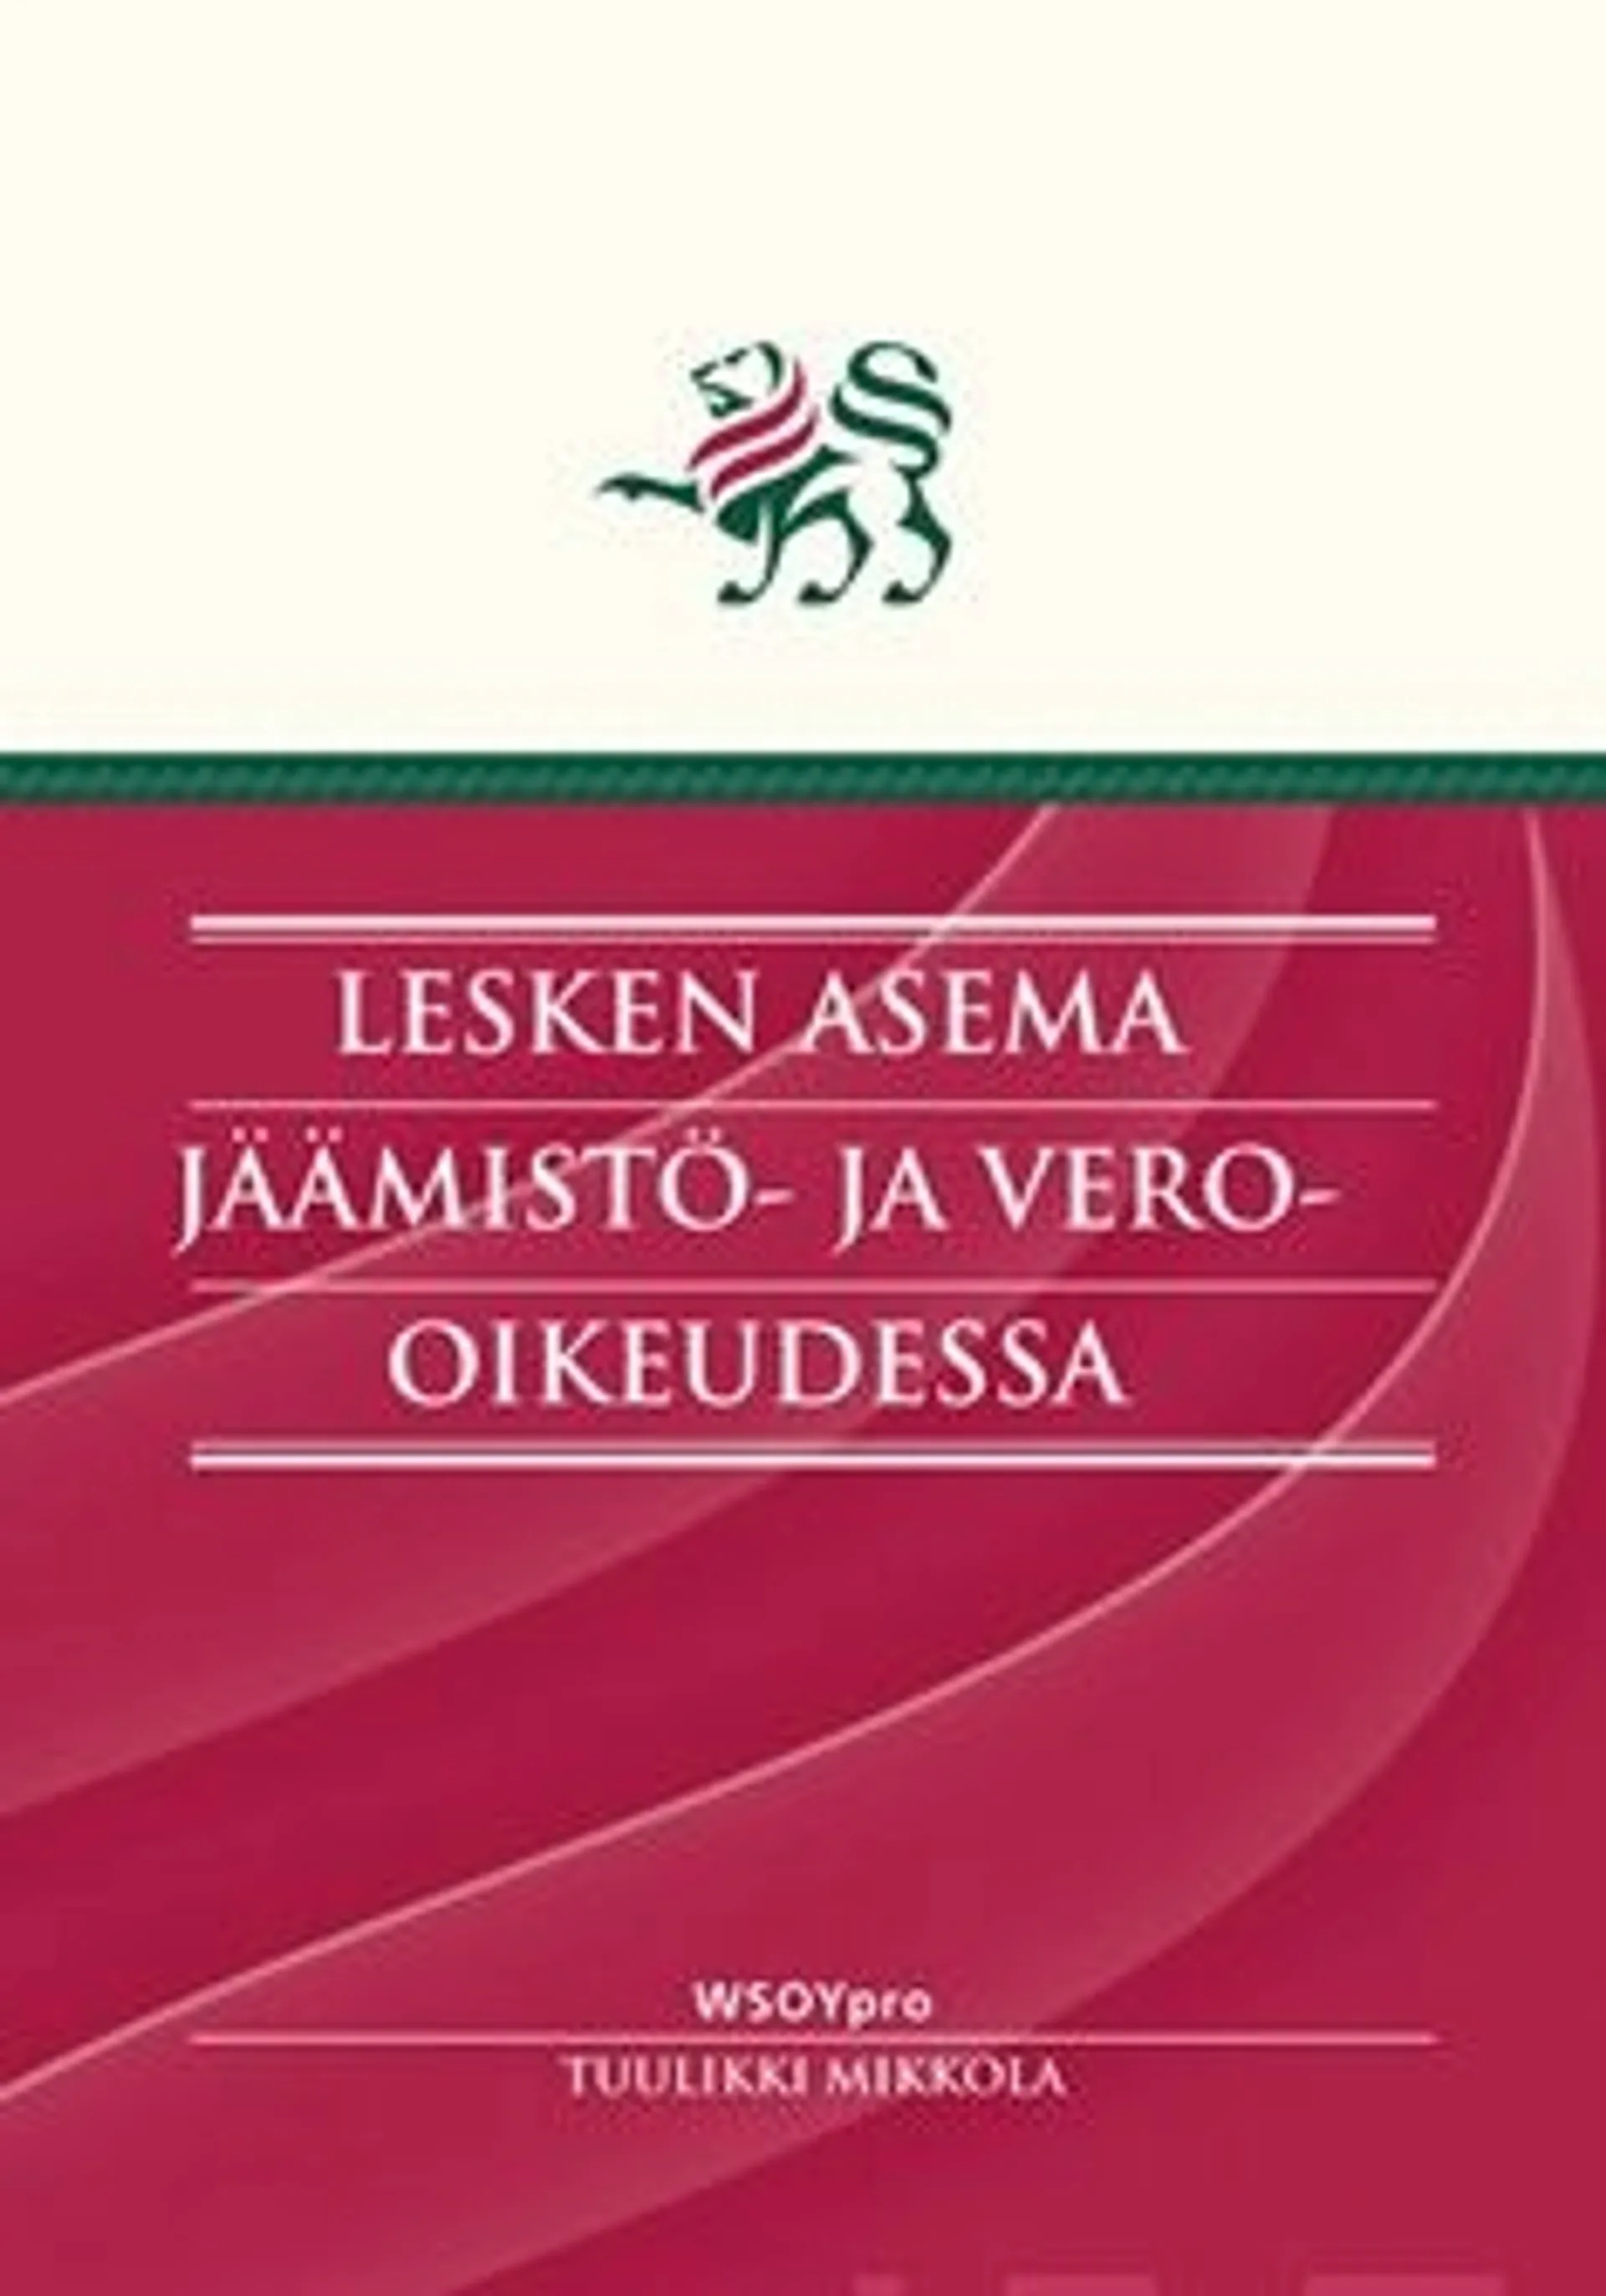 Mikkola, Lesken asema jäämistö- ja vero-oikeudessa